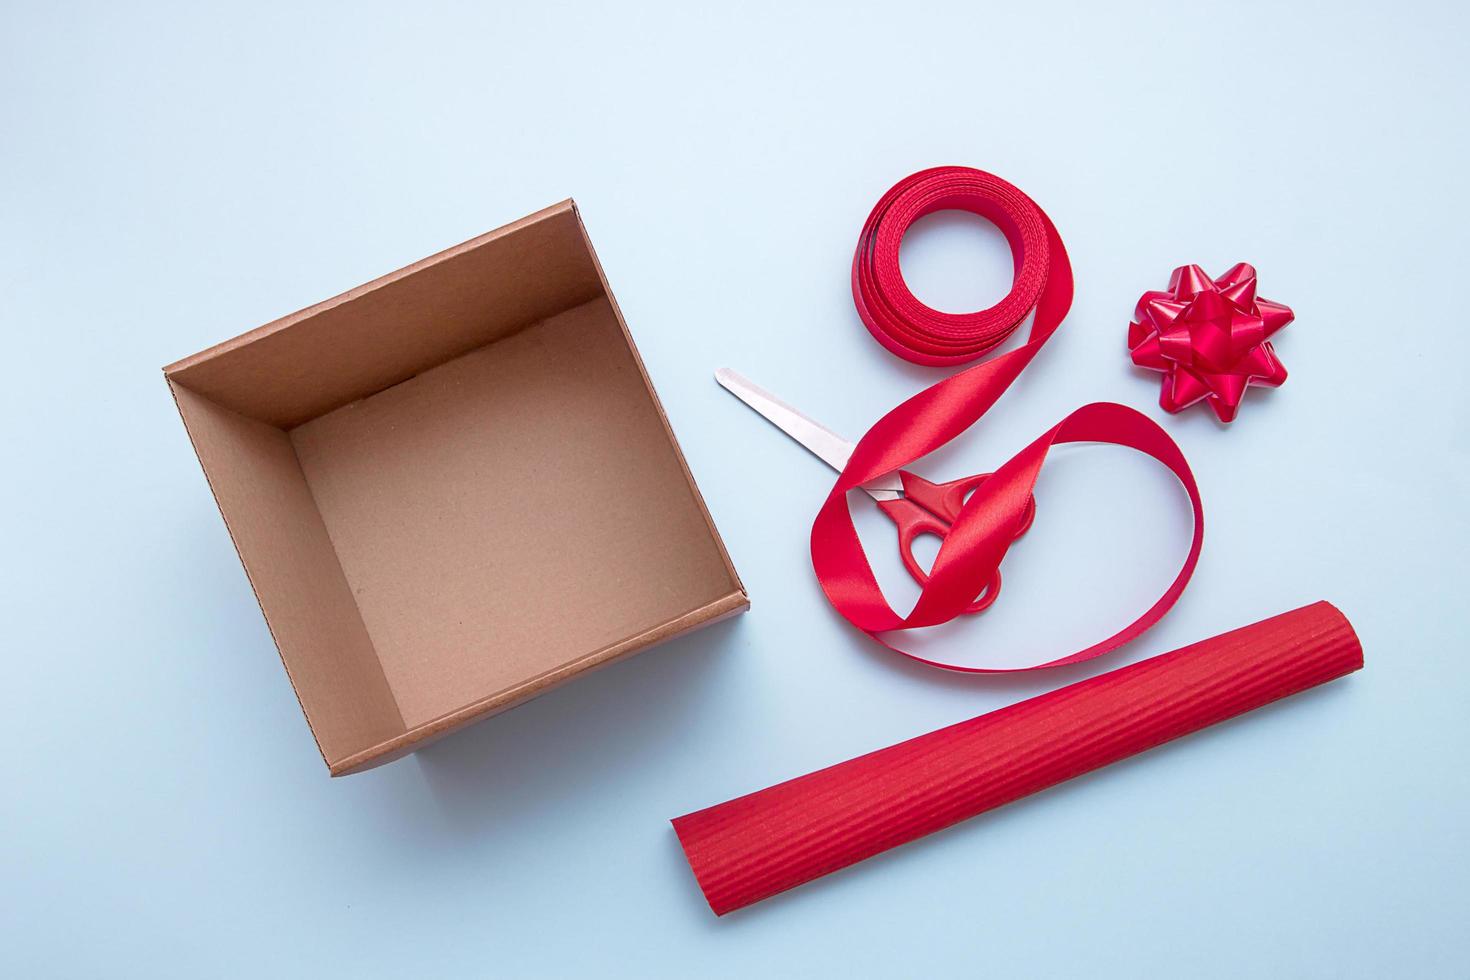 caixa de presente aberta, tesoura, fita, papel de embrulho, laços para decorar foto